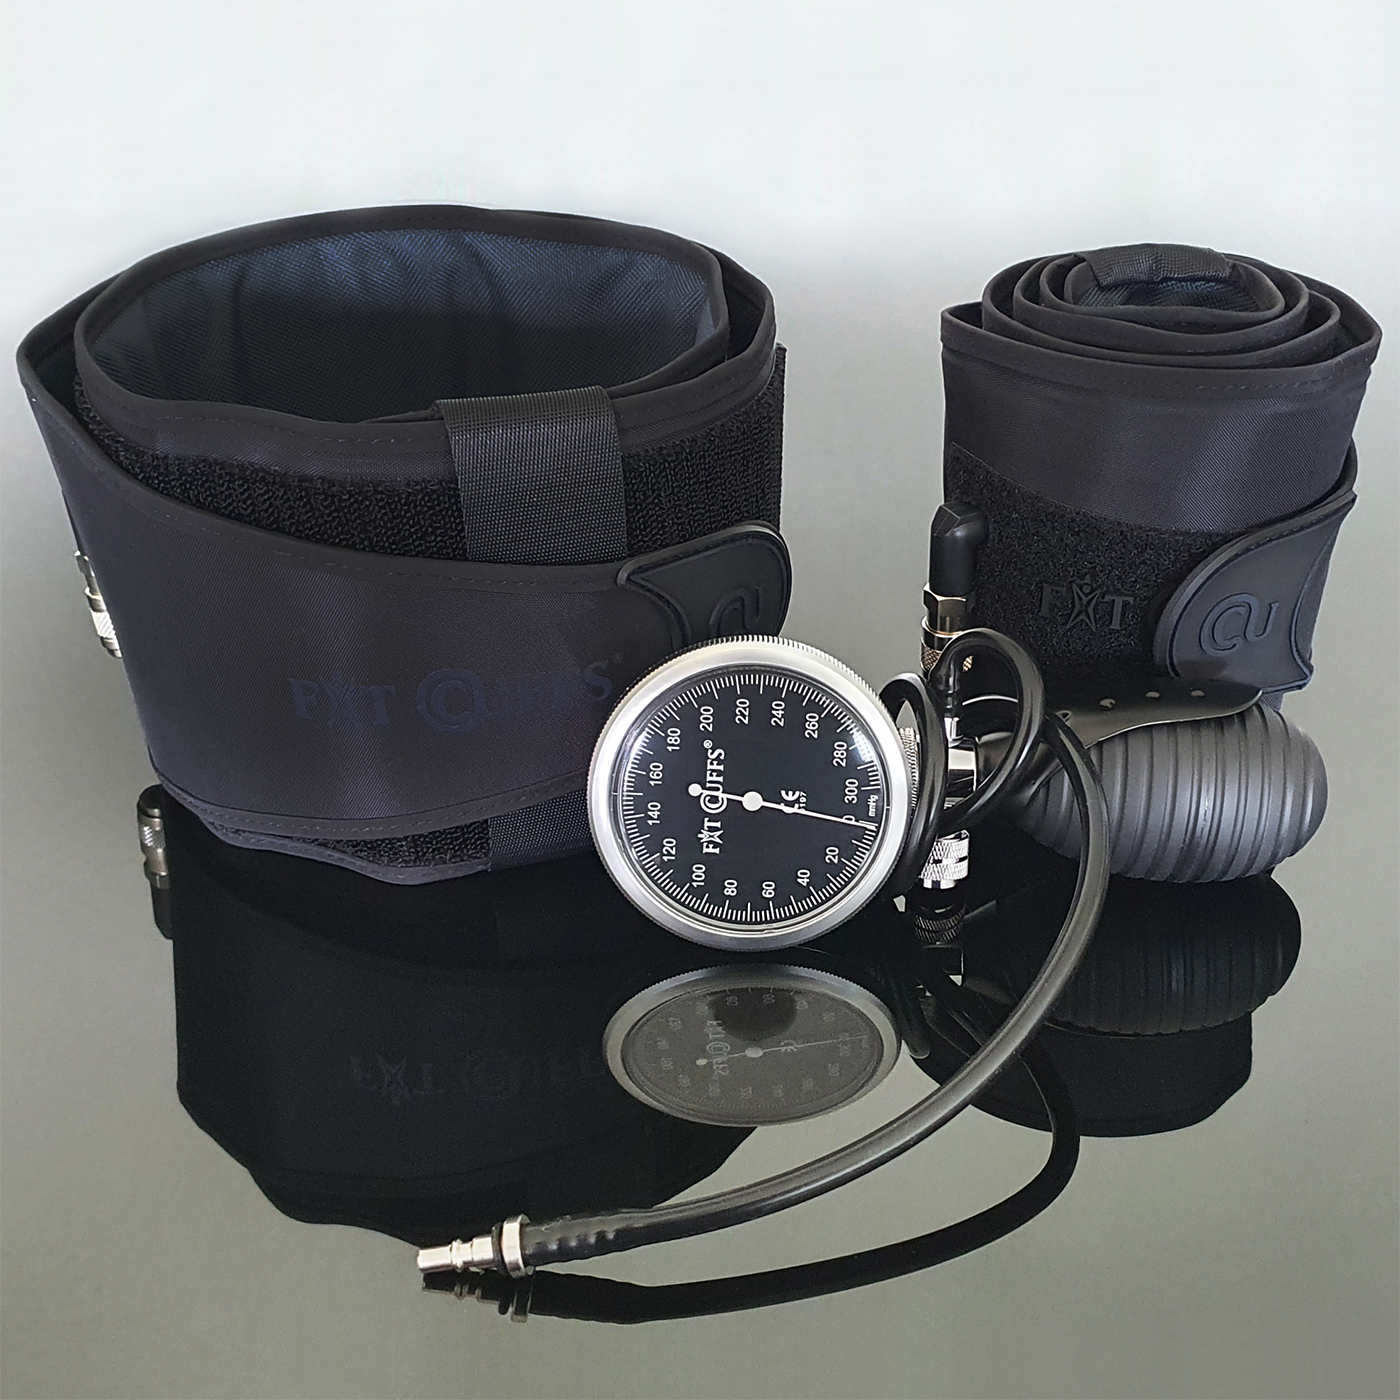 Billede af Fit Cuffs - Performance Lower V3.1 - Standard - Black